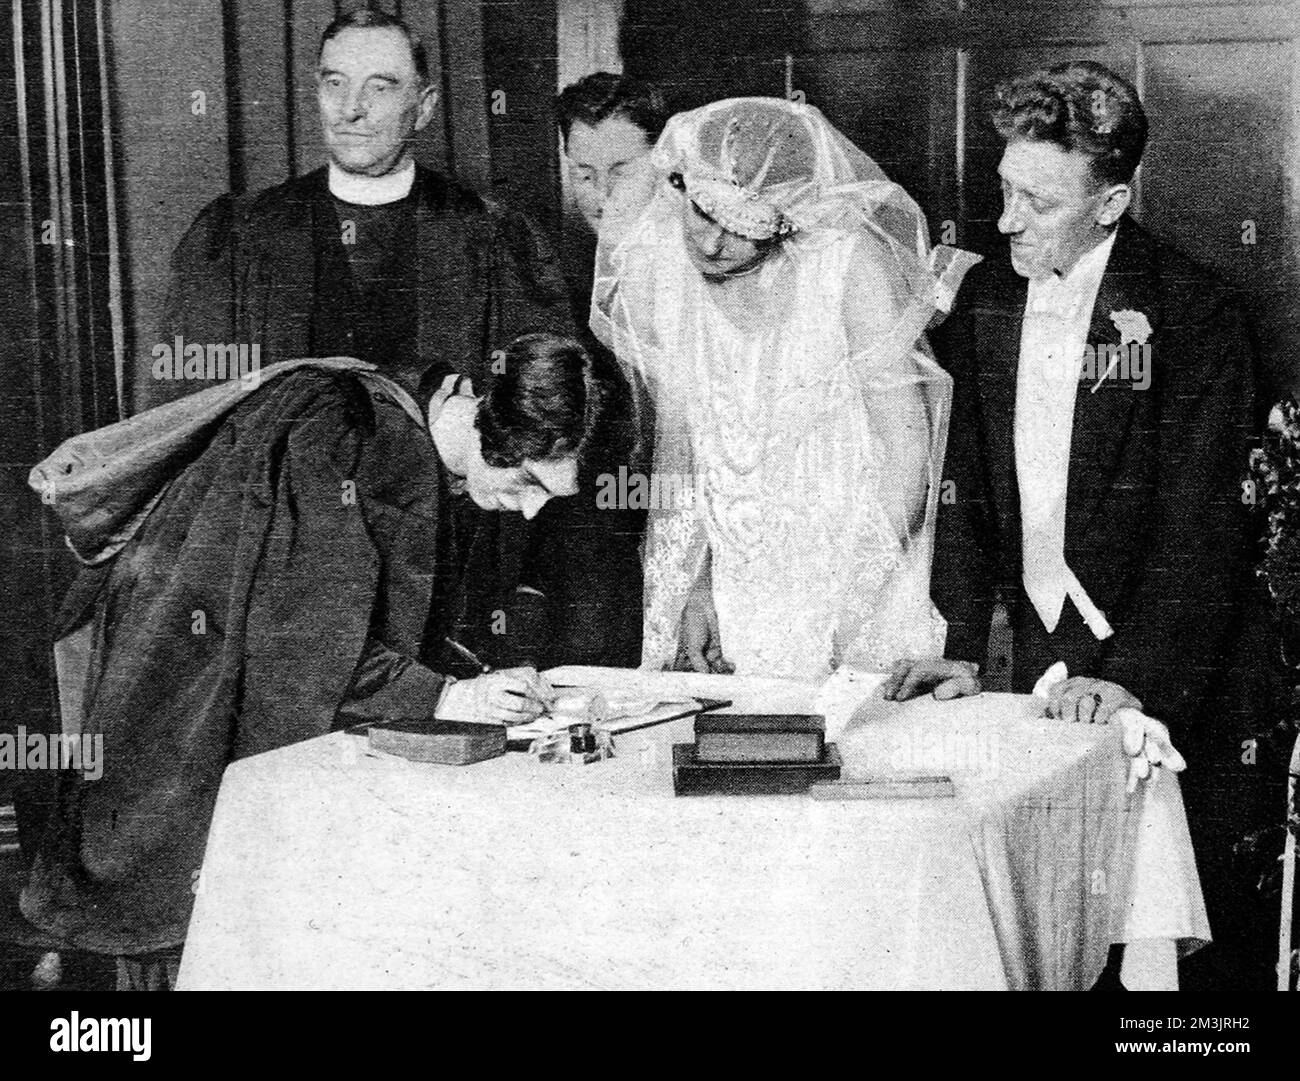 Die Reverend Miss Vera Findlay, Ministerin der Stewartville Congregational Church, Partick, Glasgow, unterzeichnet das Register, nachdem sie eine Hochzeitszeremonie in Schottland durchgeführt hat. Es war die erste Ehe auf den britischen Inseln, die von einer Frau bevollmächtigt wurde. Datum: 1928 Stockfoto